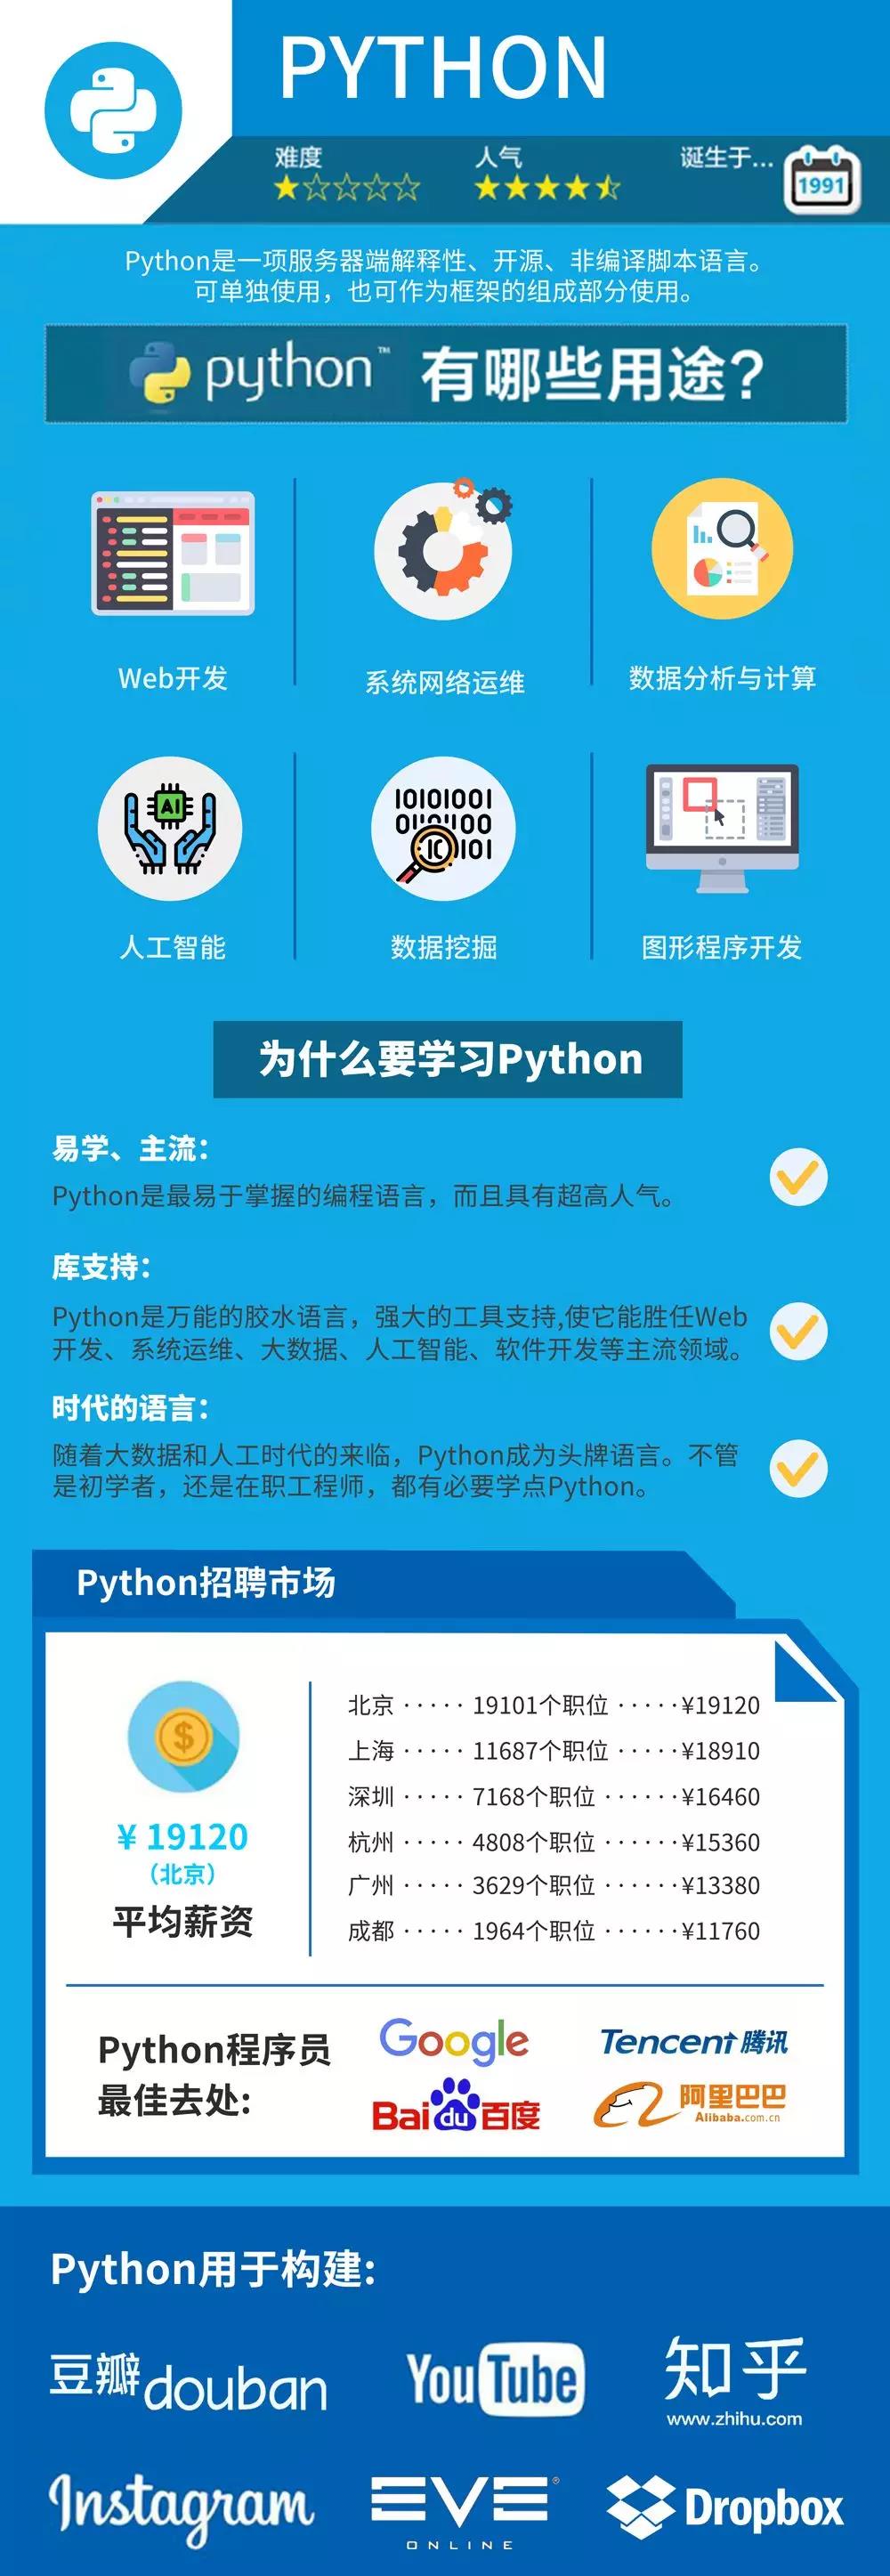 Python的好处和薪资